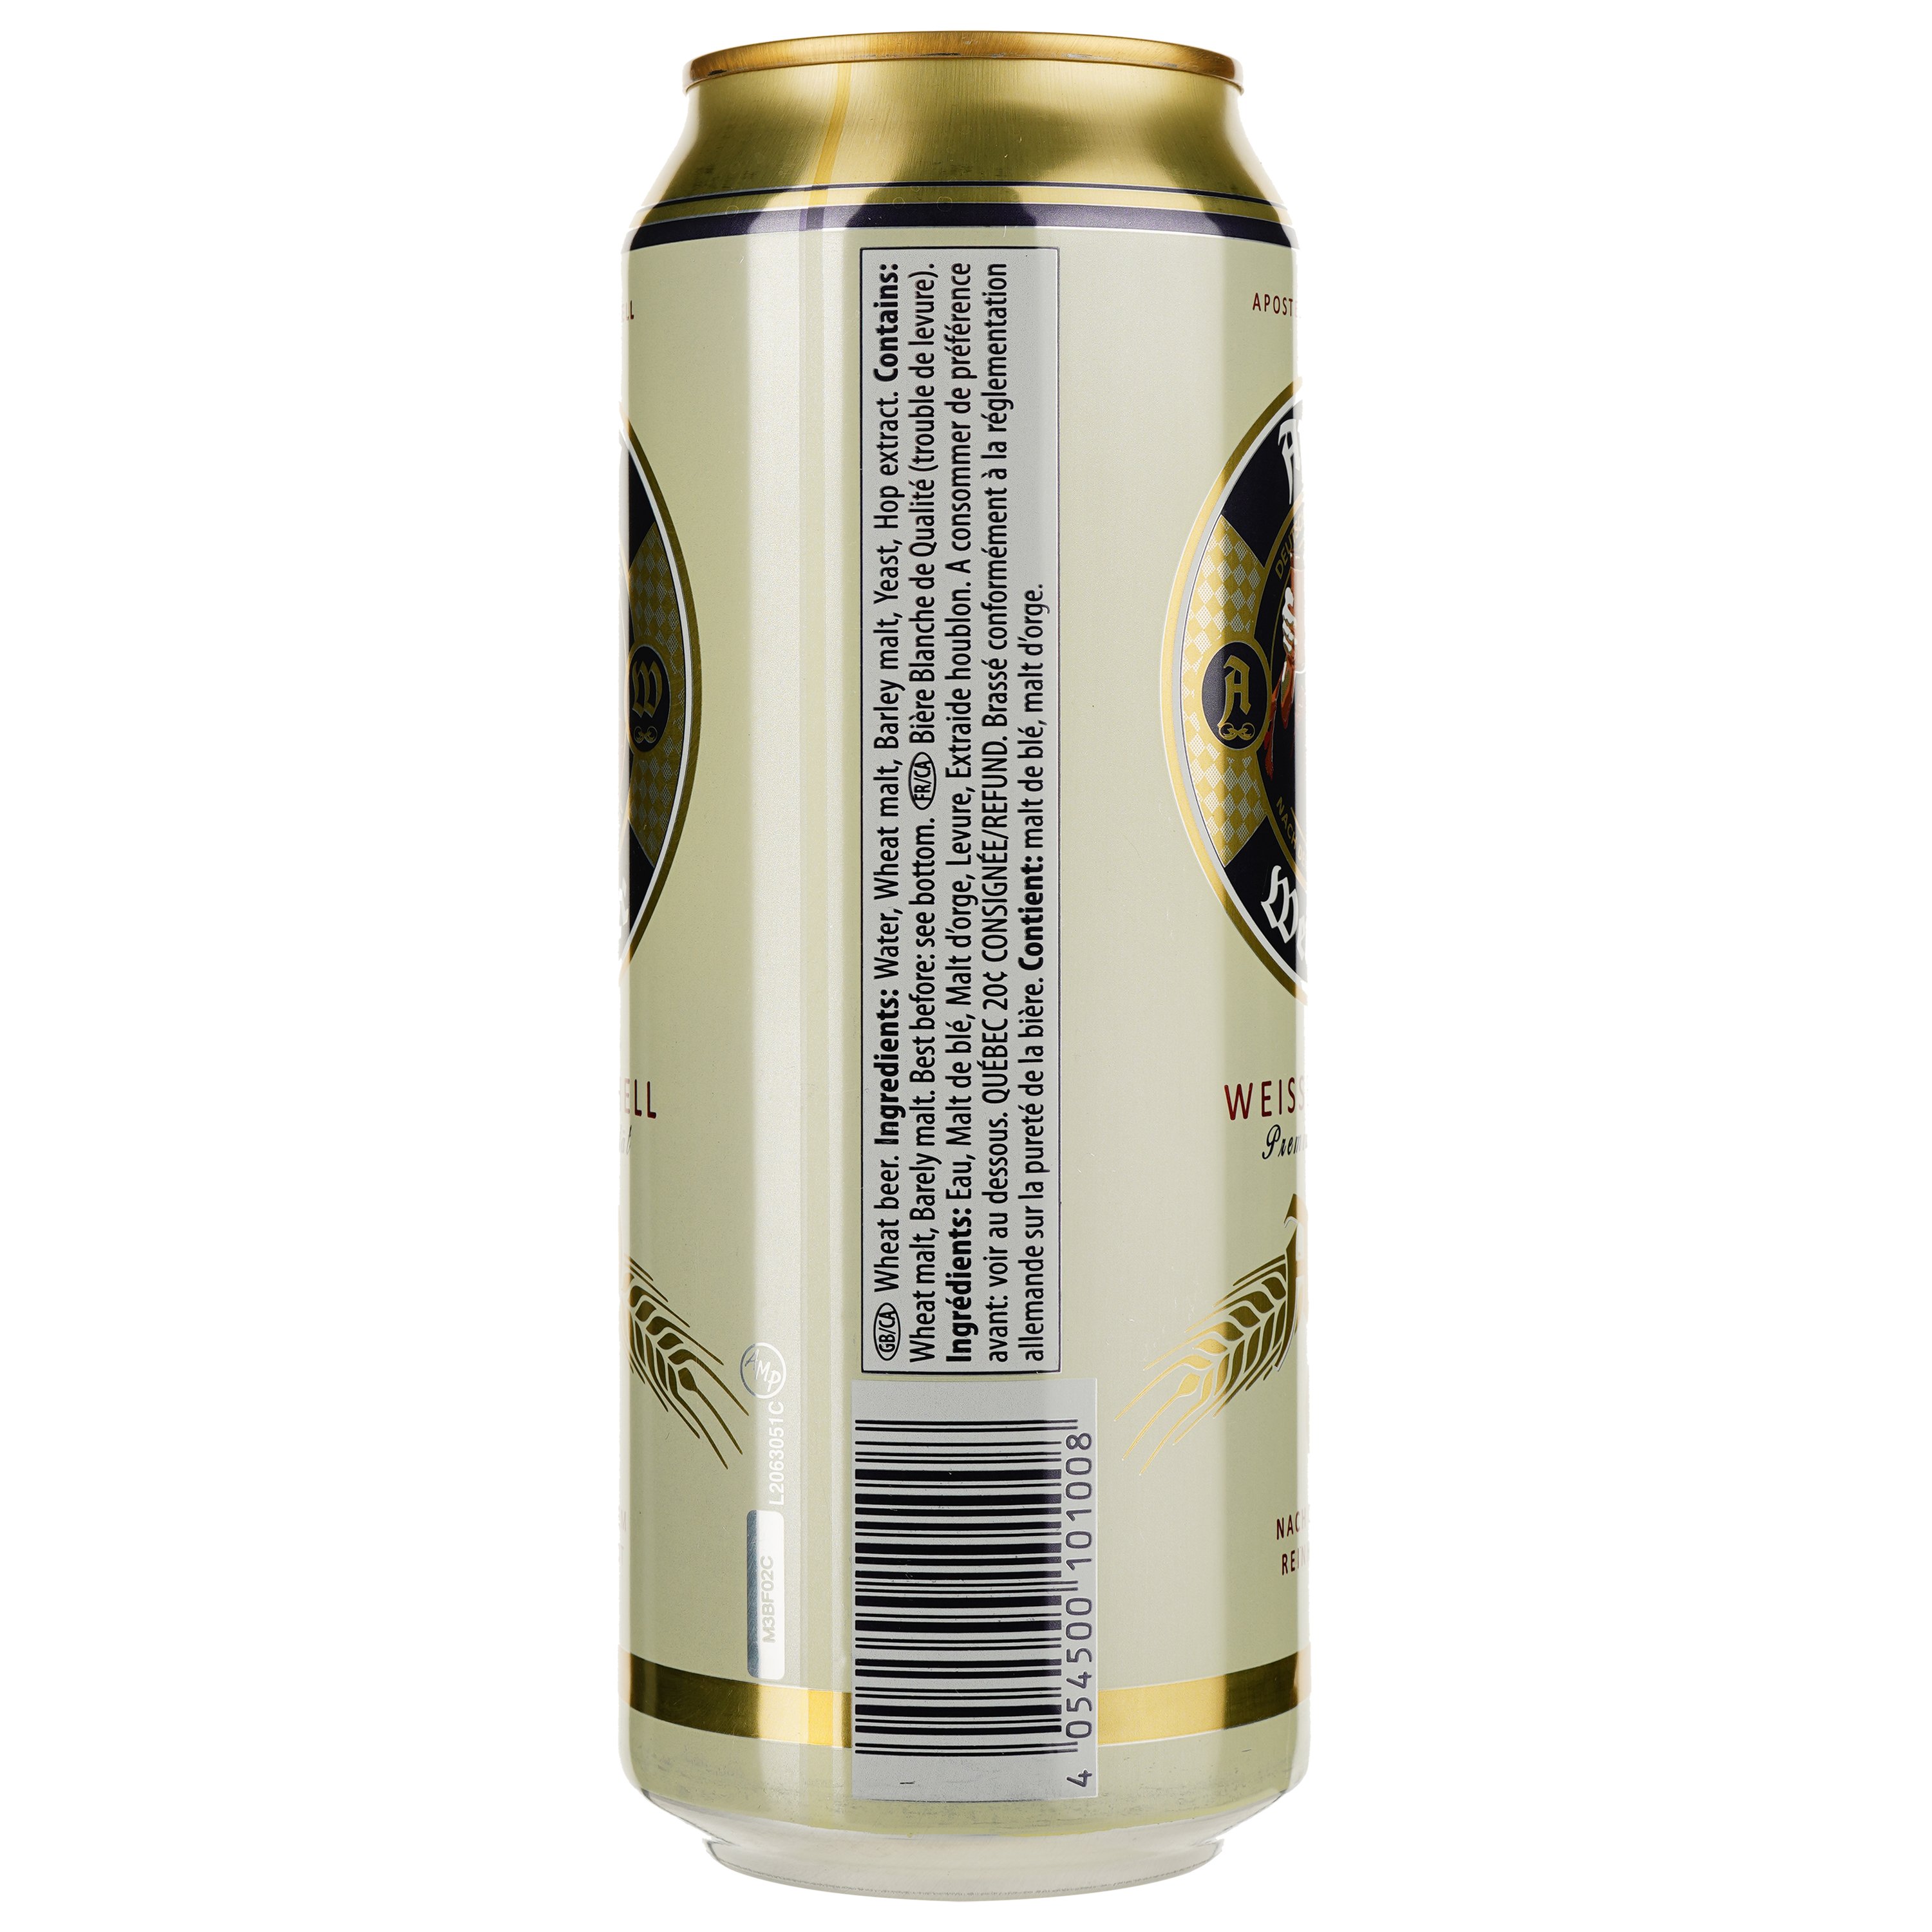 Пиво Apostel Weissbier Hell, світле, нефільтроване, 5% 0.5 л з/б - фото 2